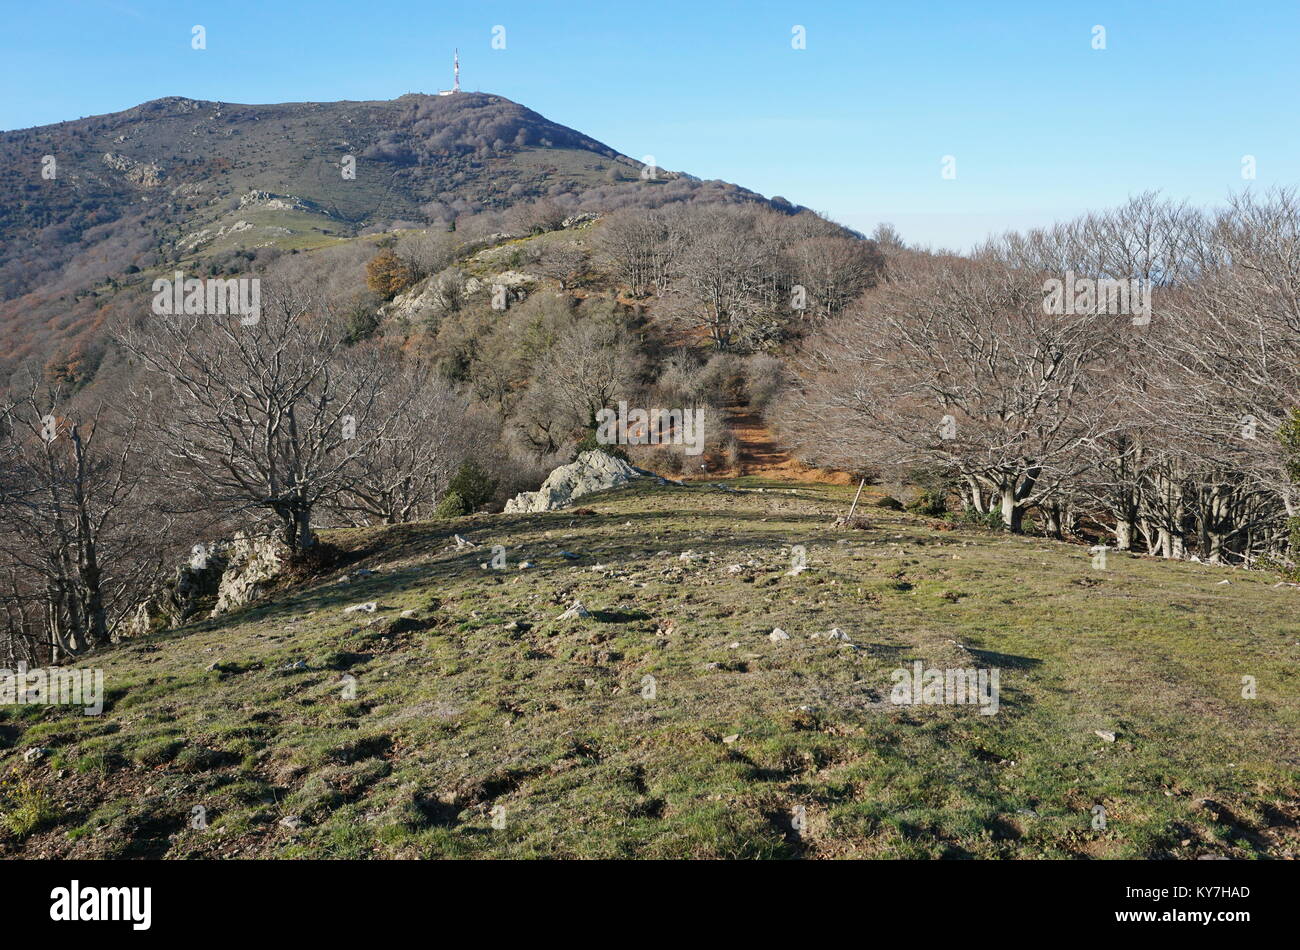 Paysage de montagne près de le pic Neulos dans le Massif de l'Albera entre la France et l'Espagne, Pyrénées Orientales, Catalogne Banque D'Images